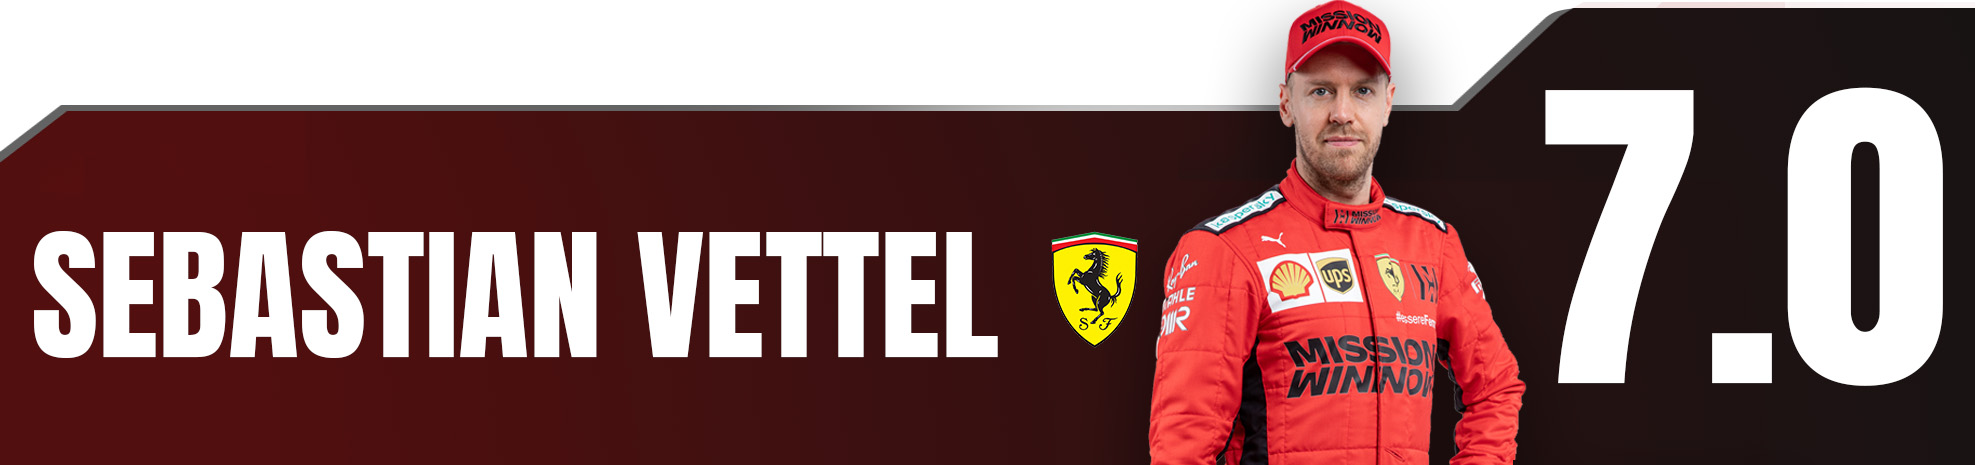 Vettel Ita